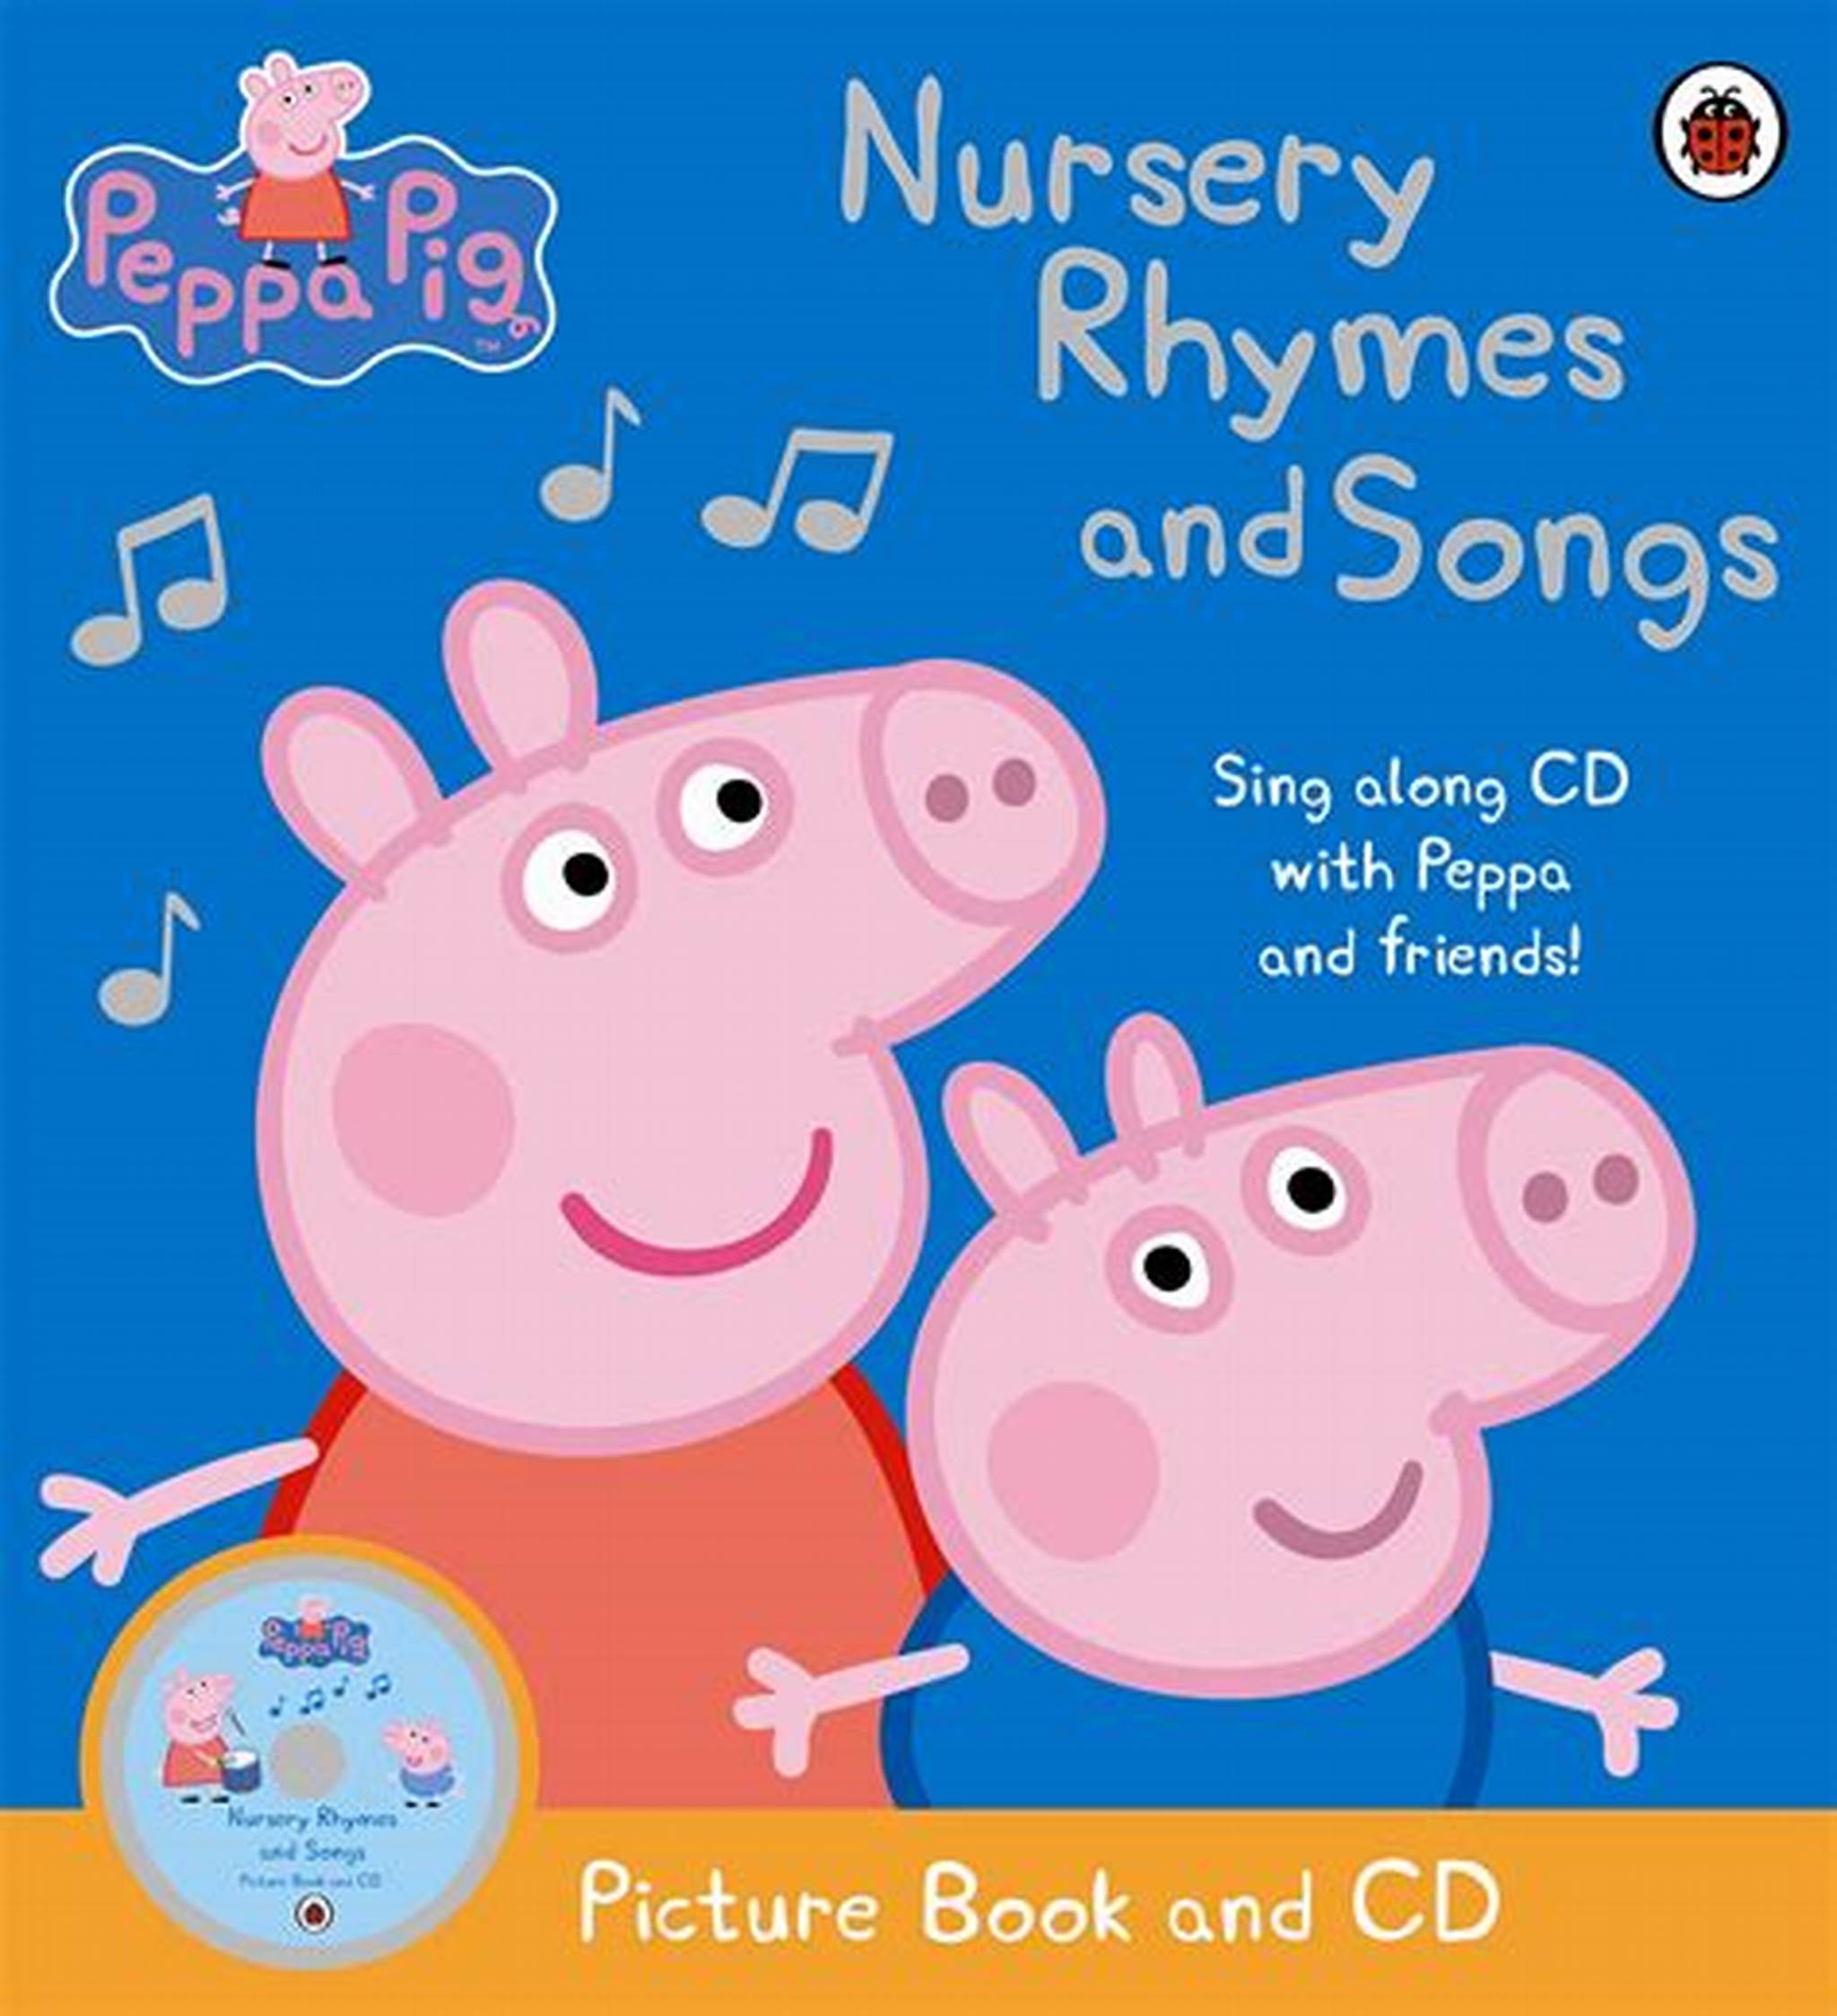 Nursery Rhymes and Songs | Peppa Pig Wiki | Fandom